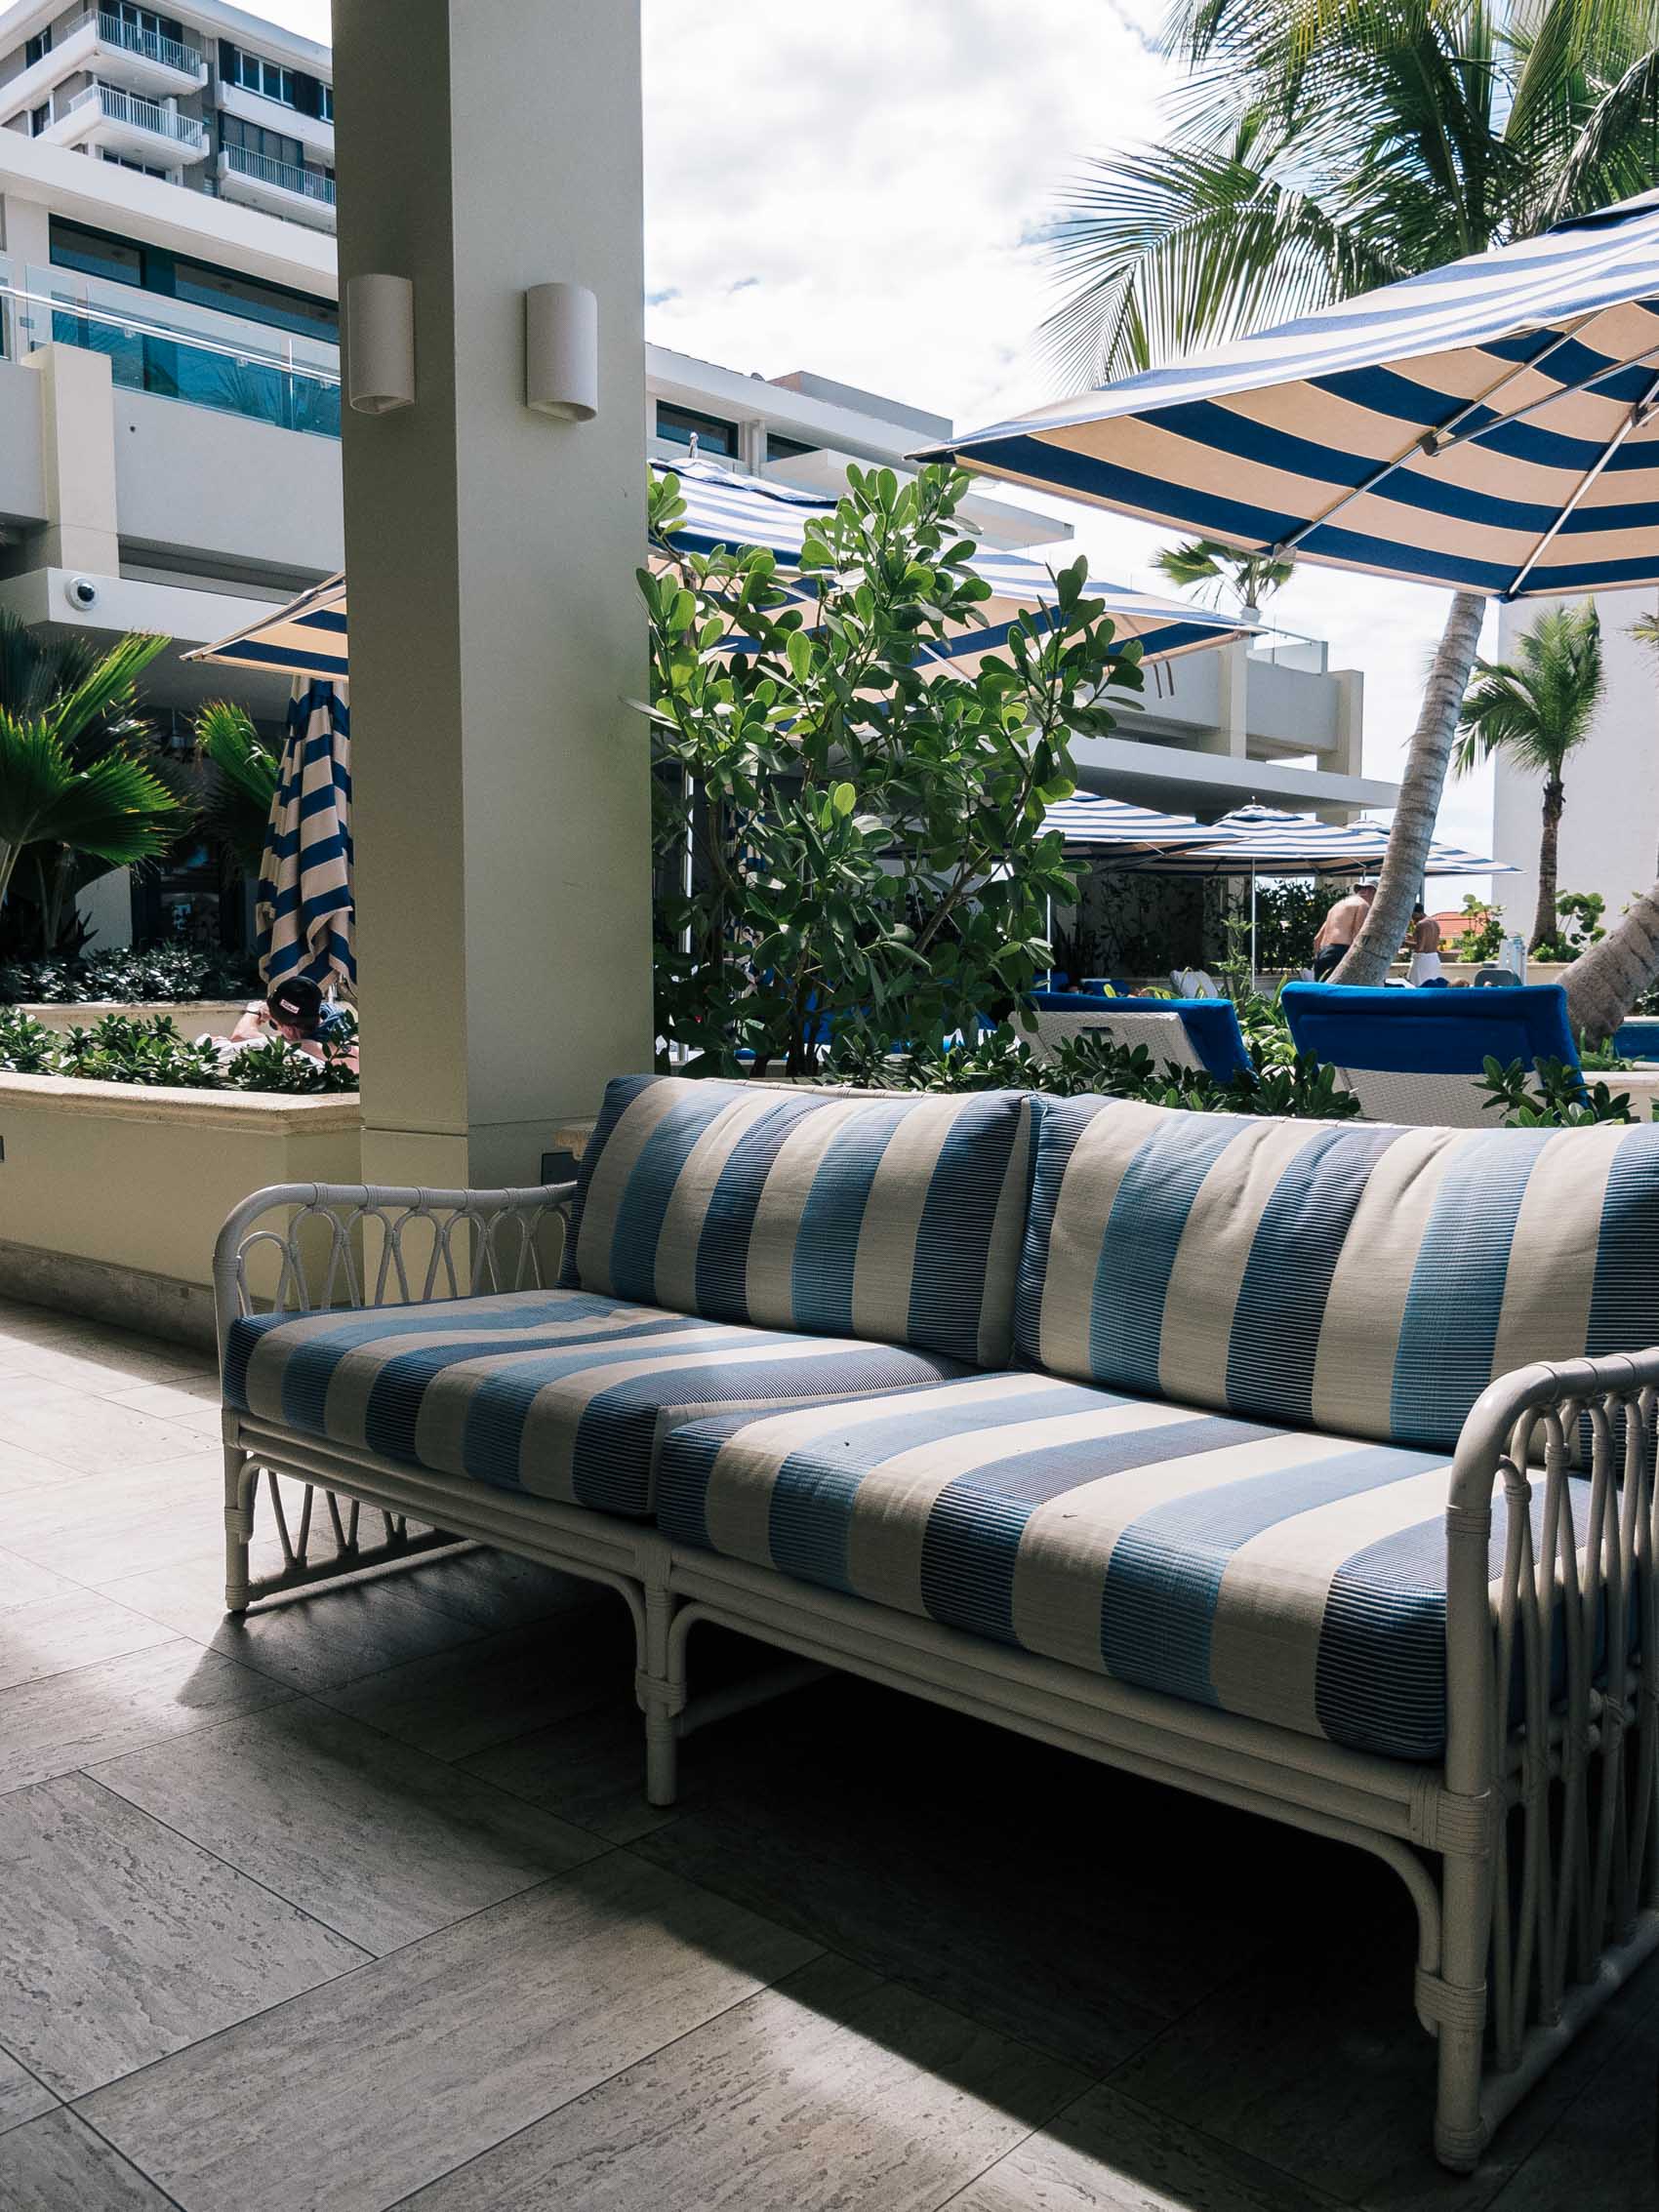 Tropical decor at the Condado Vanderbilt hotel in San Juan, Puerto Rico